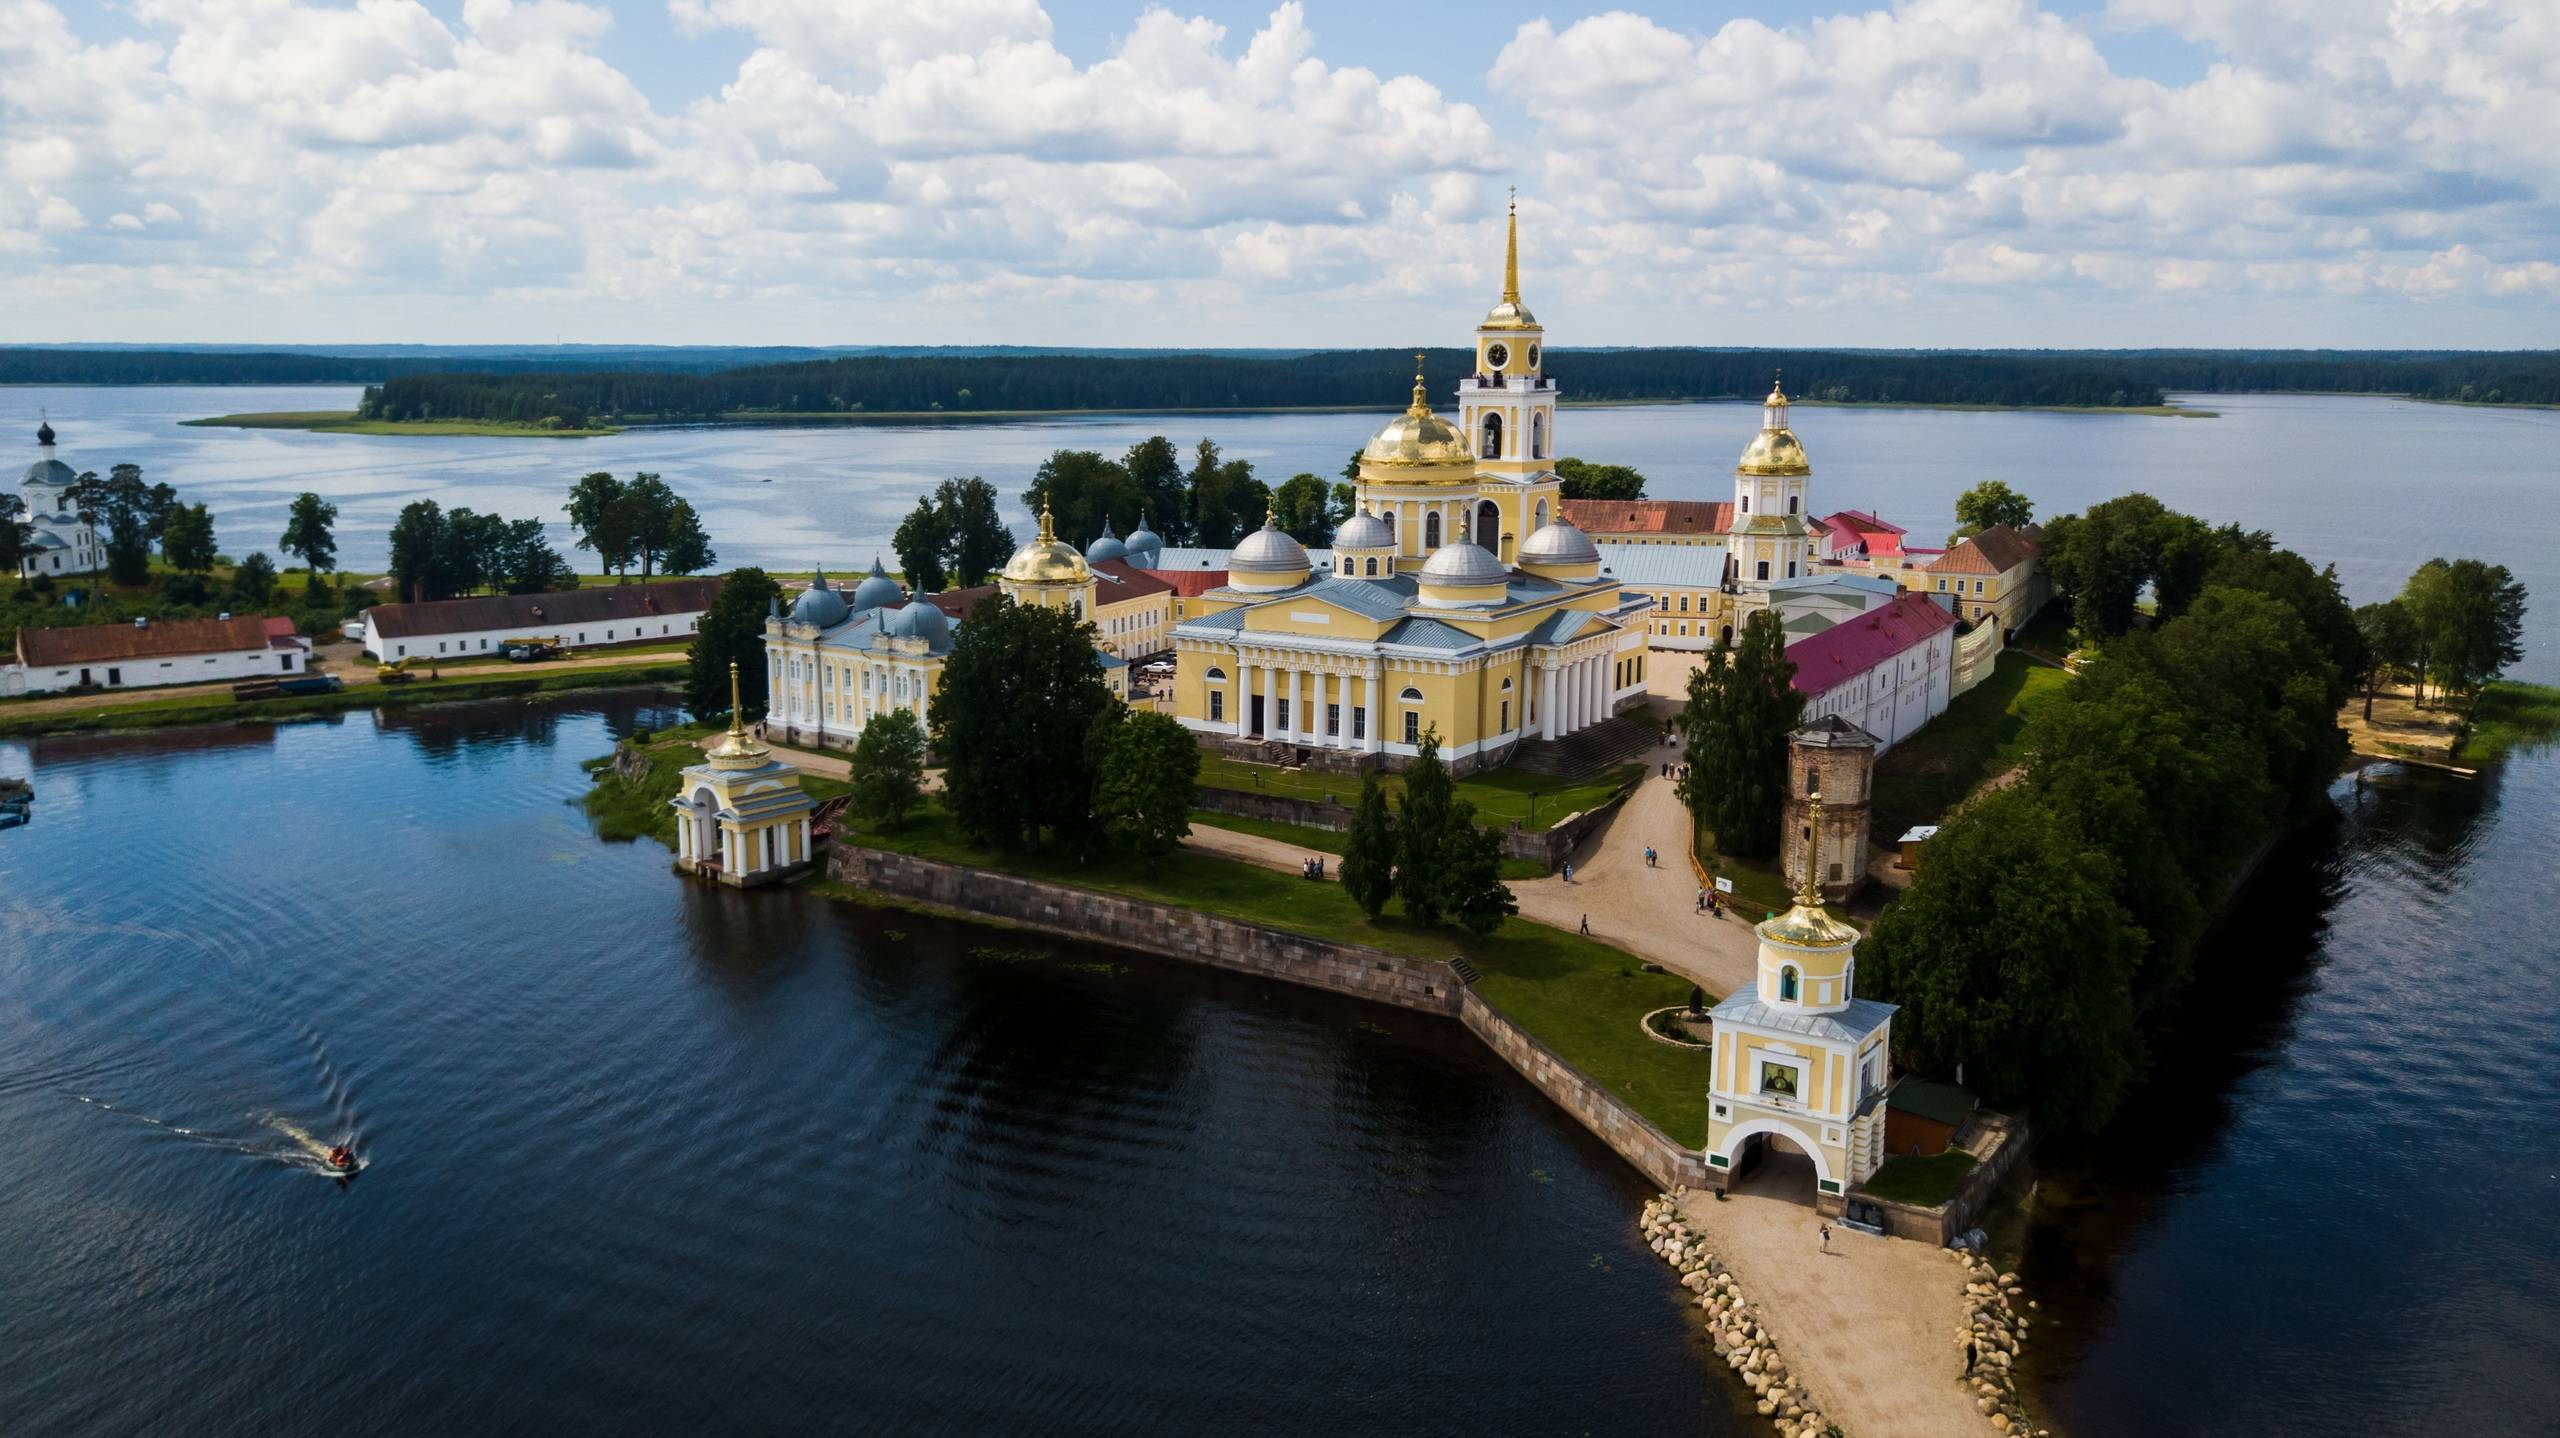 Достопримечательности города осташков - база рыбака на селигере русские корни